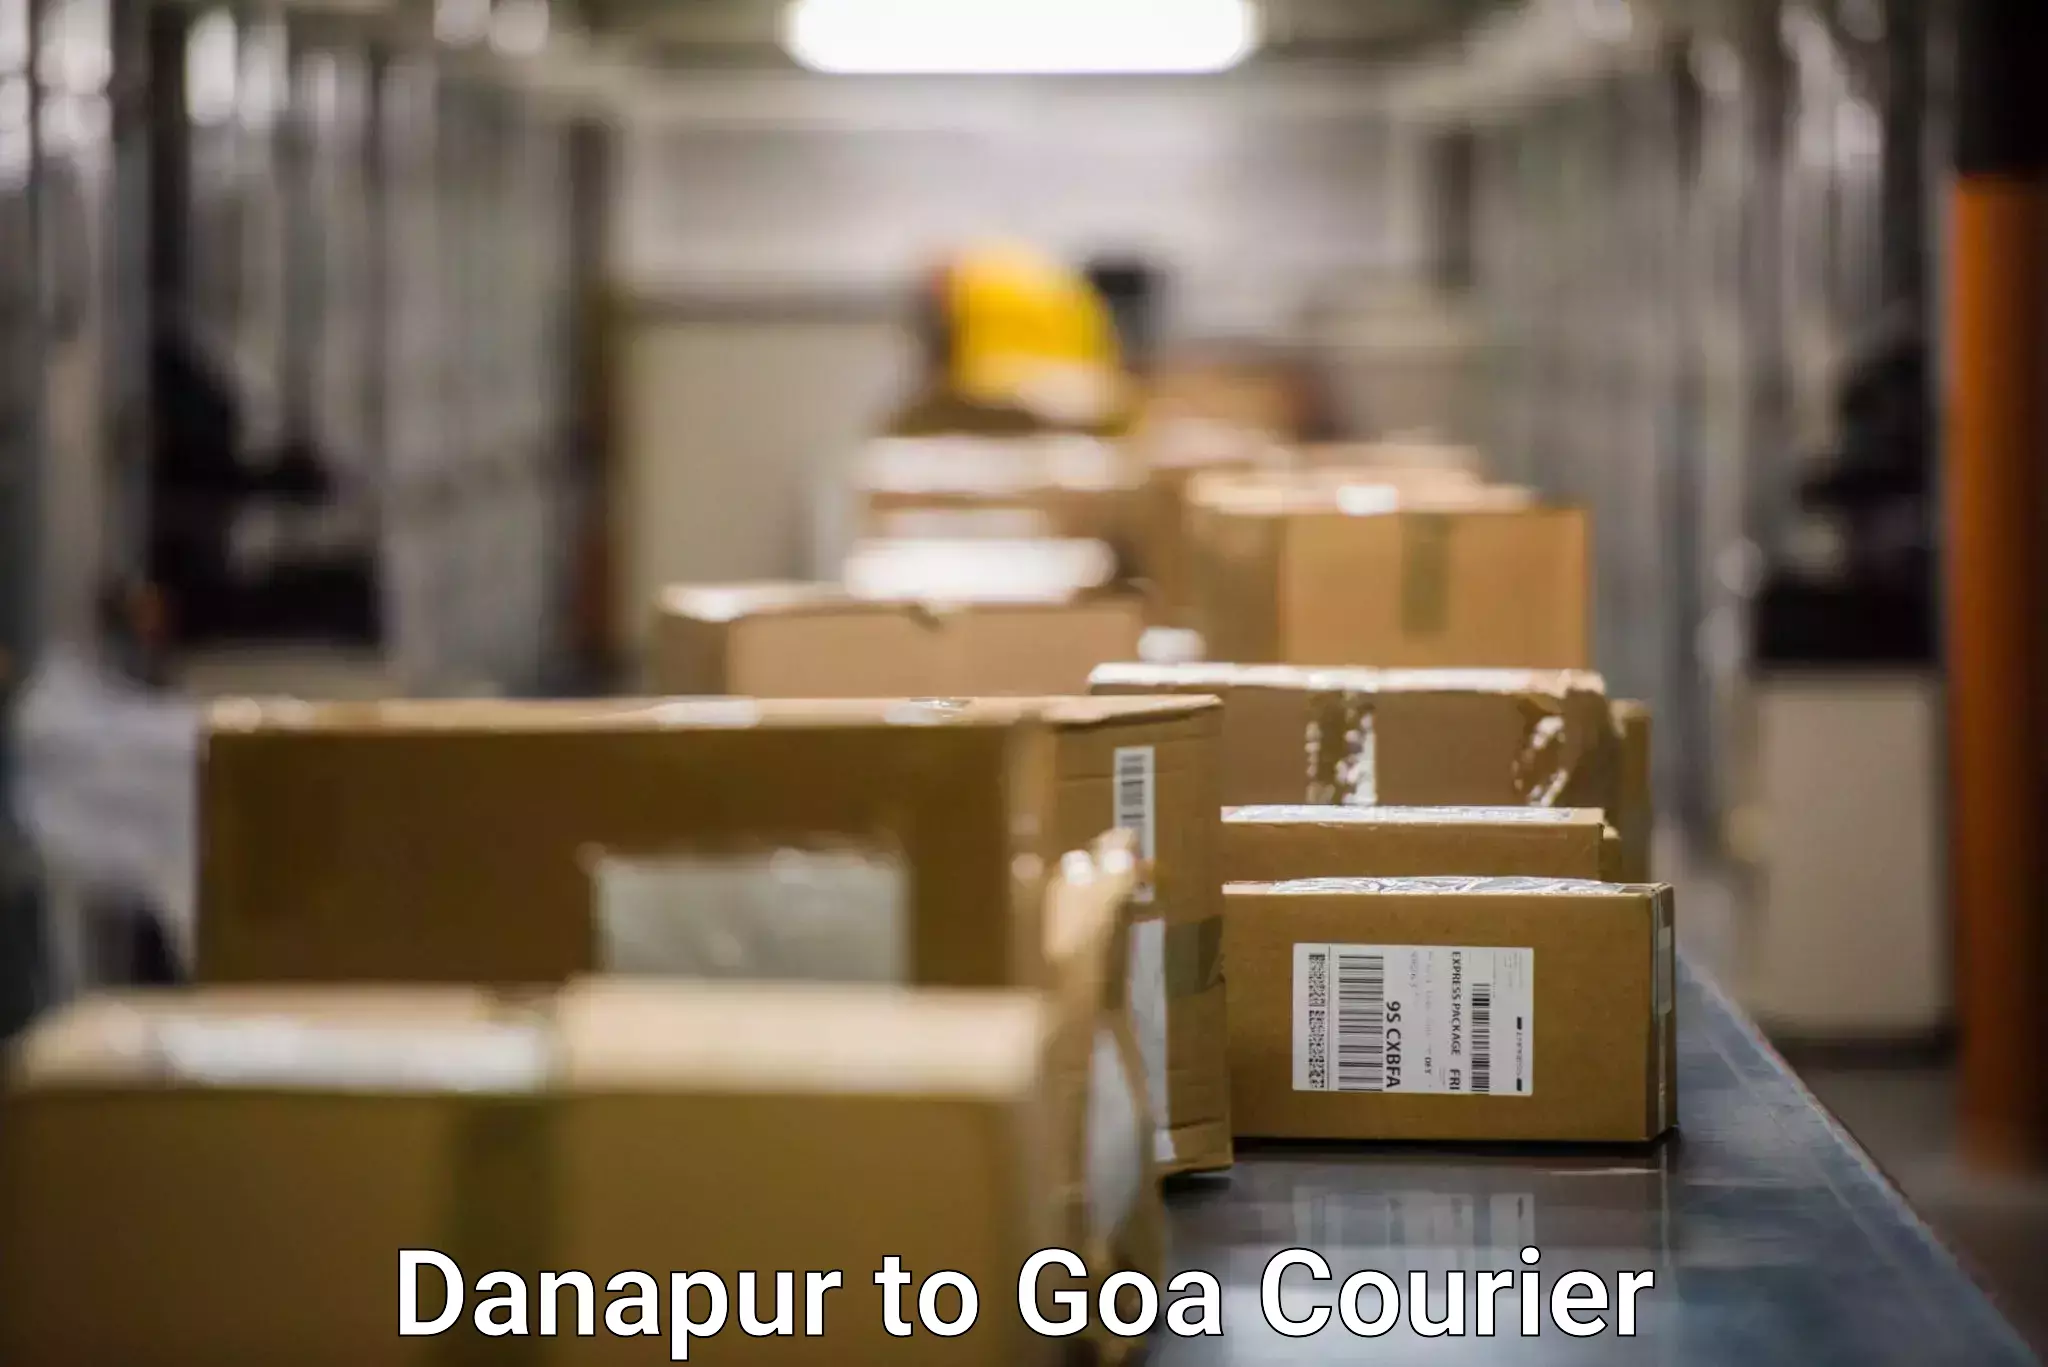 Fast delivery service Danapur to Goa